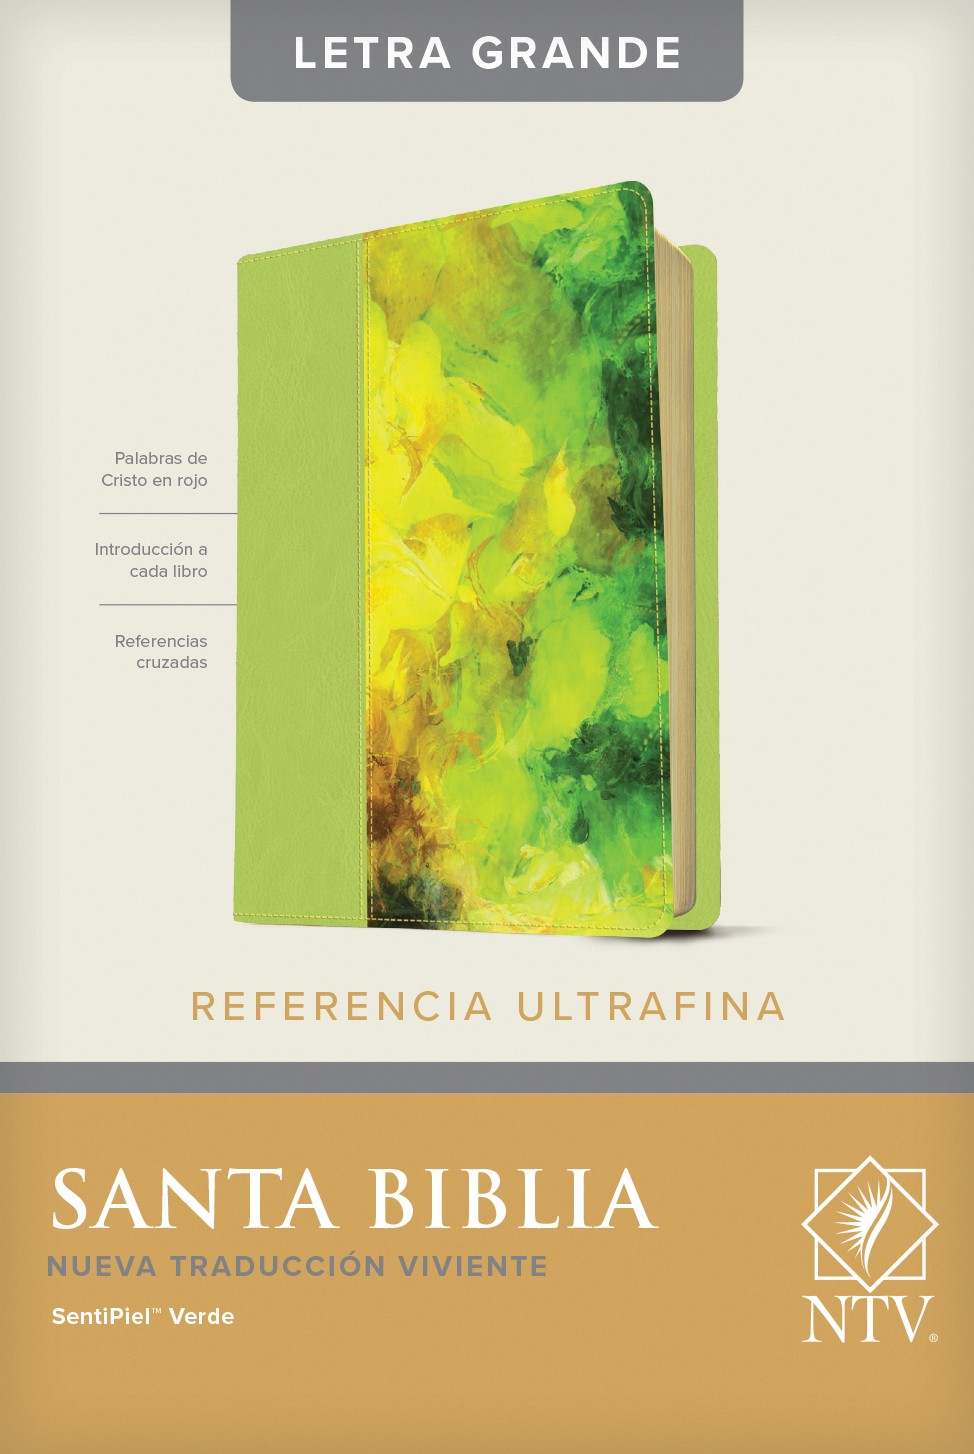  Santa Biblia NTV, Edición de referencia ultrafina, letra grande (SentiPiel, Verde, Índice)